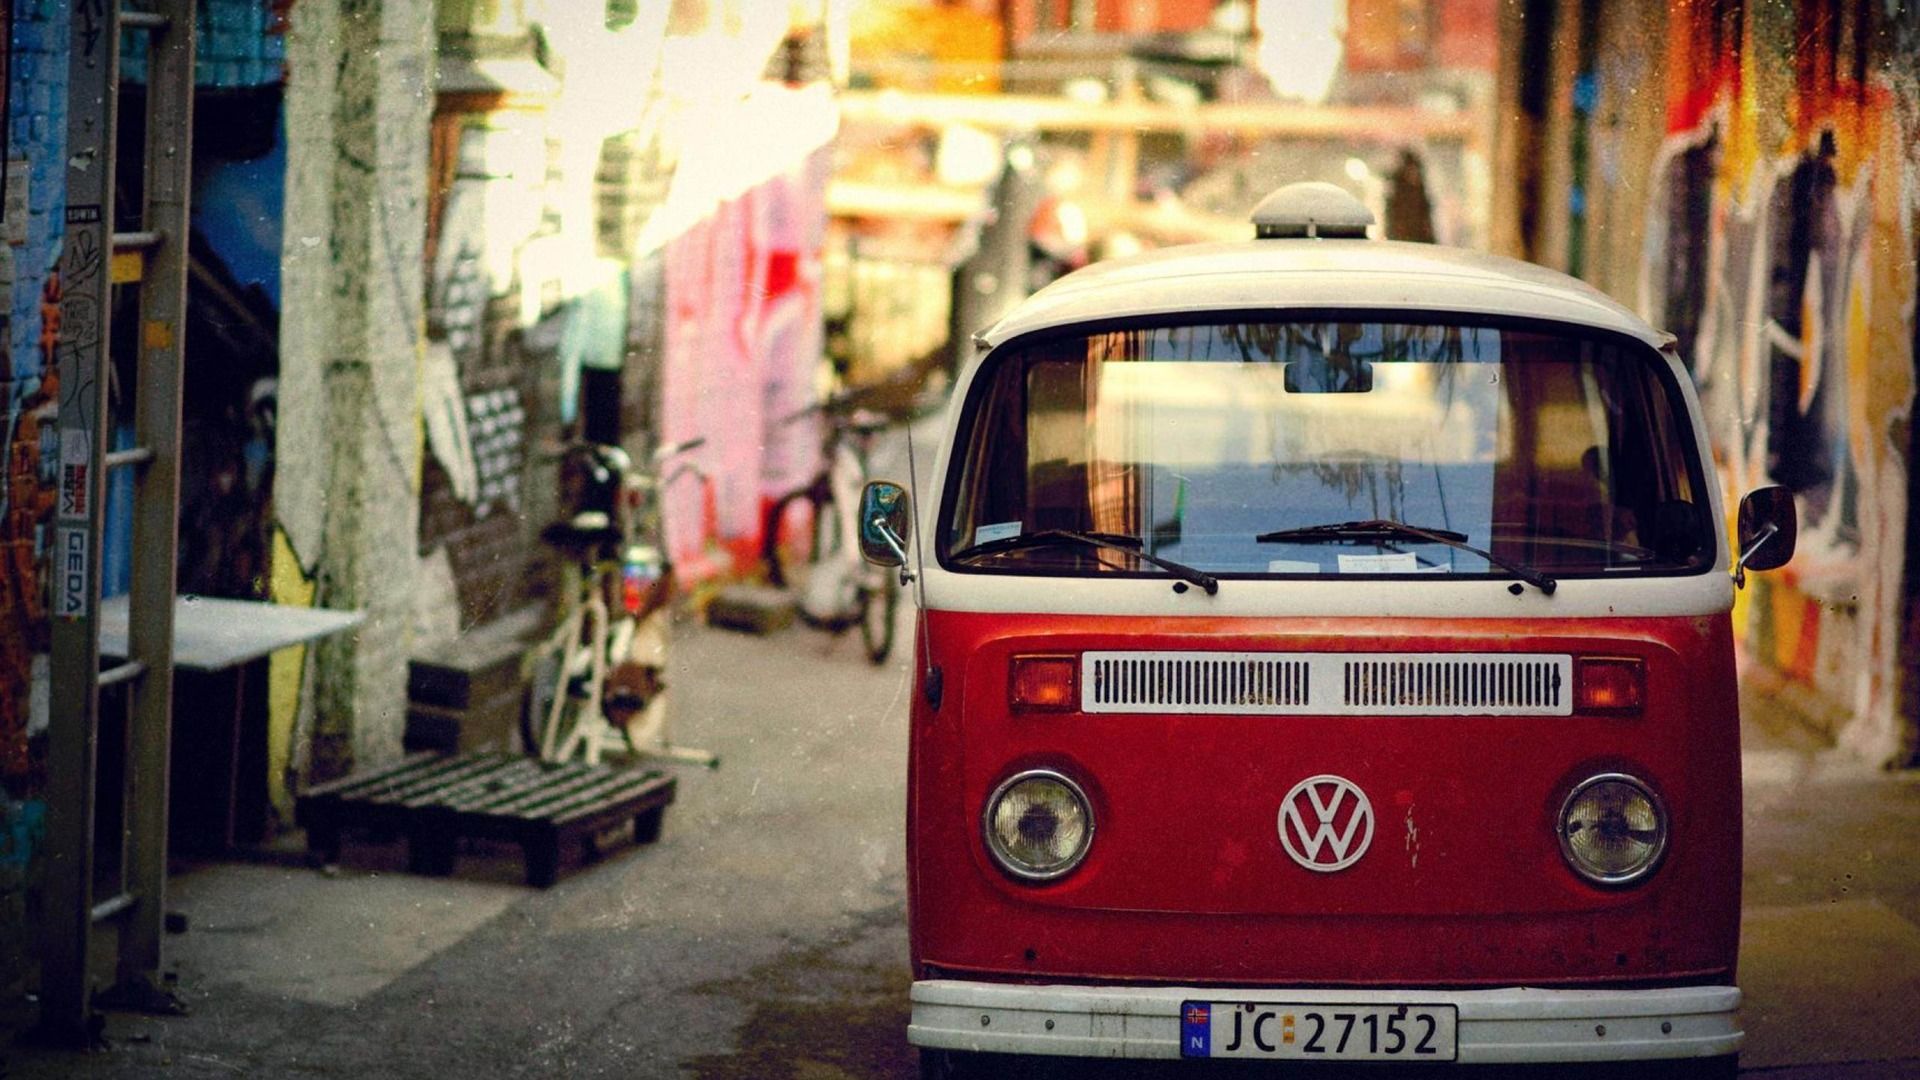 Volkswagen Type 2 Bus Wallpapers